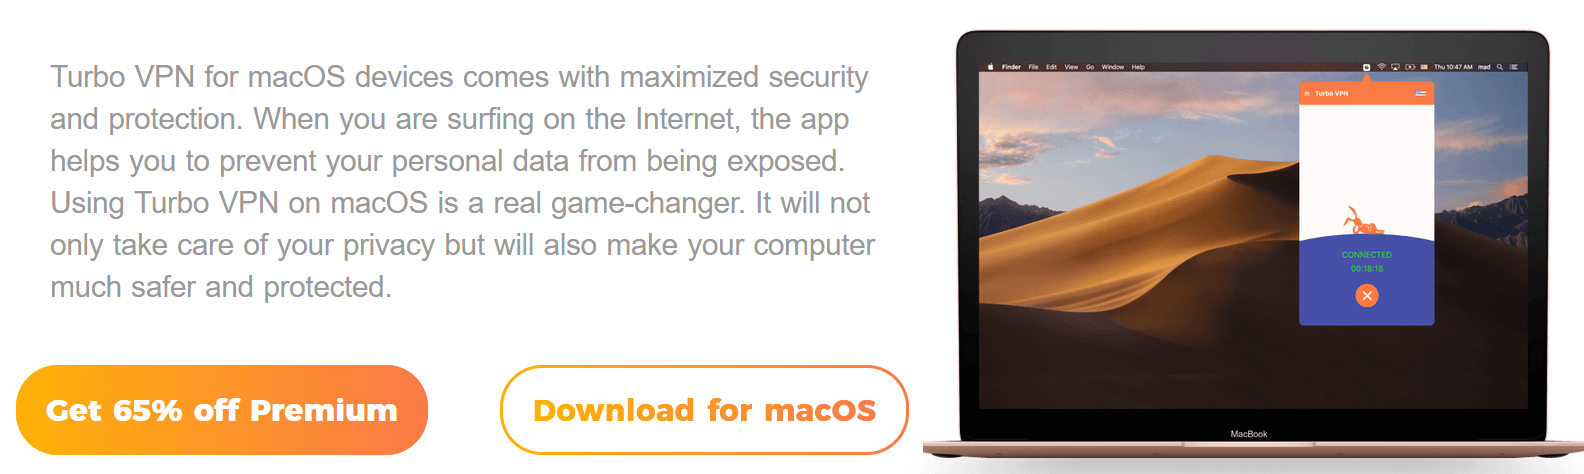 Turbo VPN for macOS